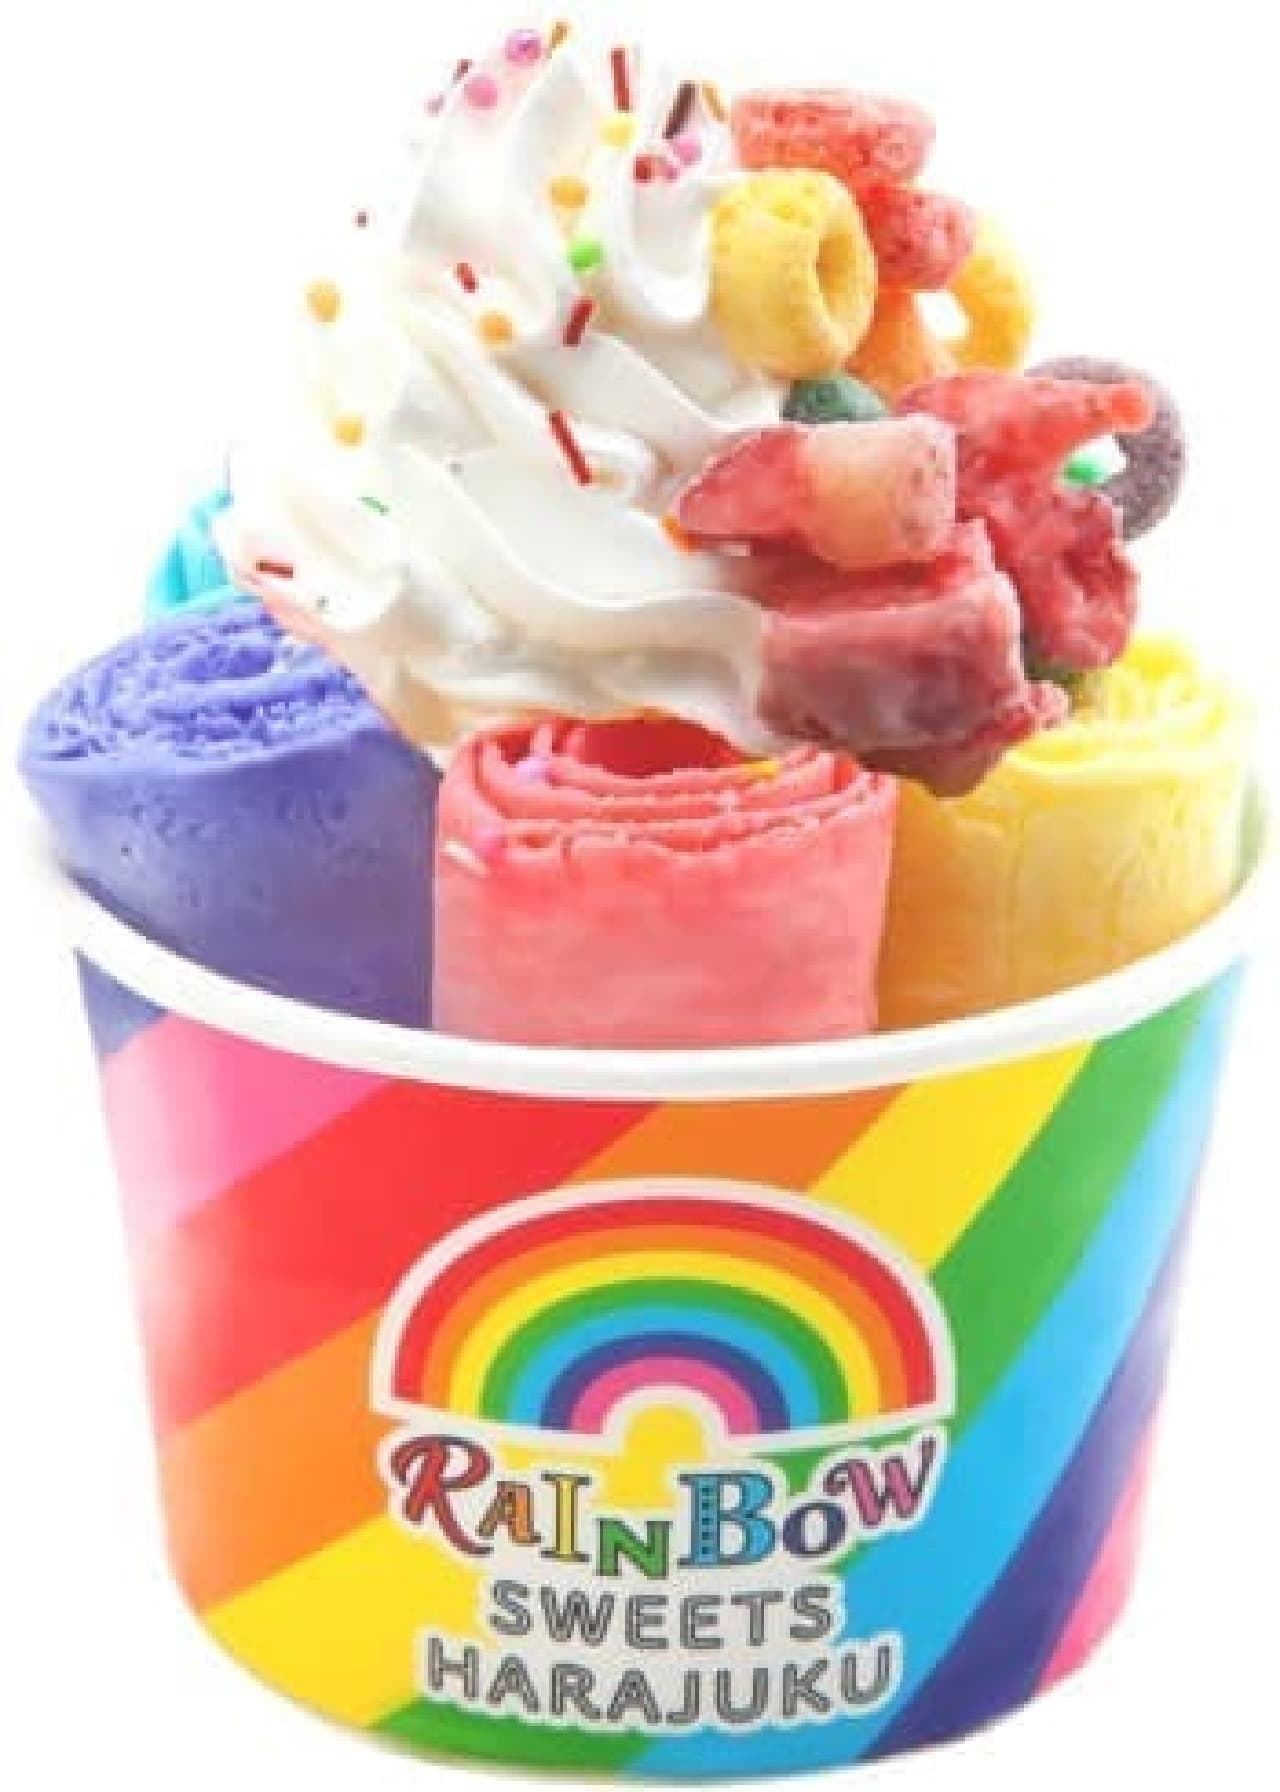 "Rainbow Sweets" specialty store "RAINBOW SWEETS HARAJUKU"